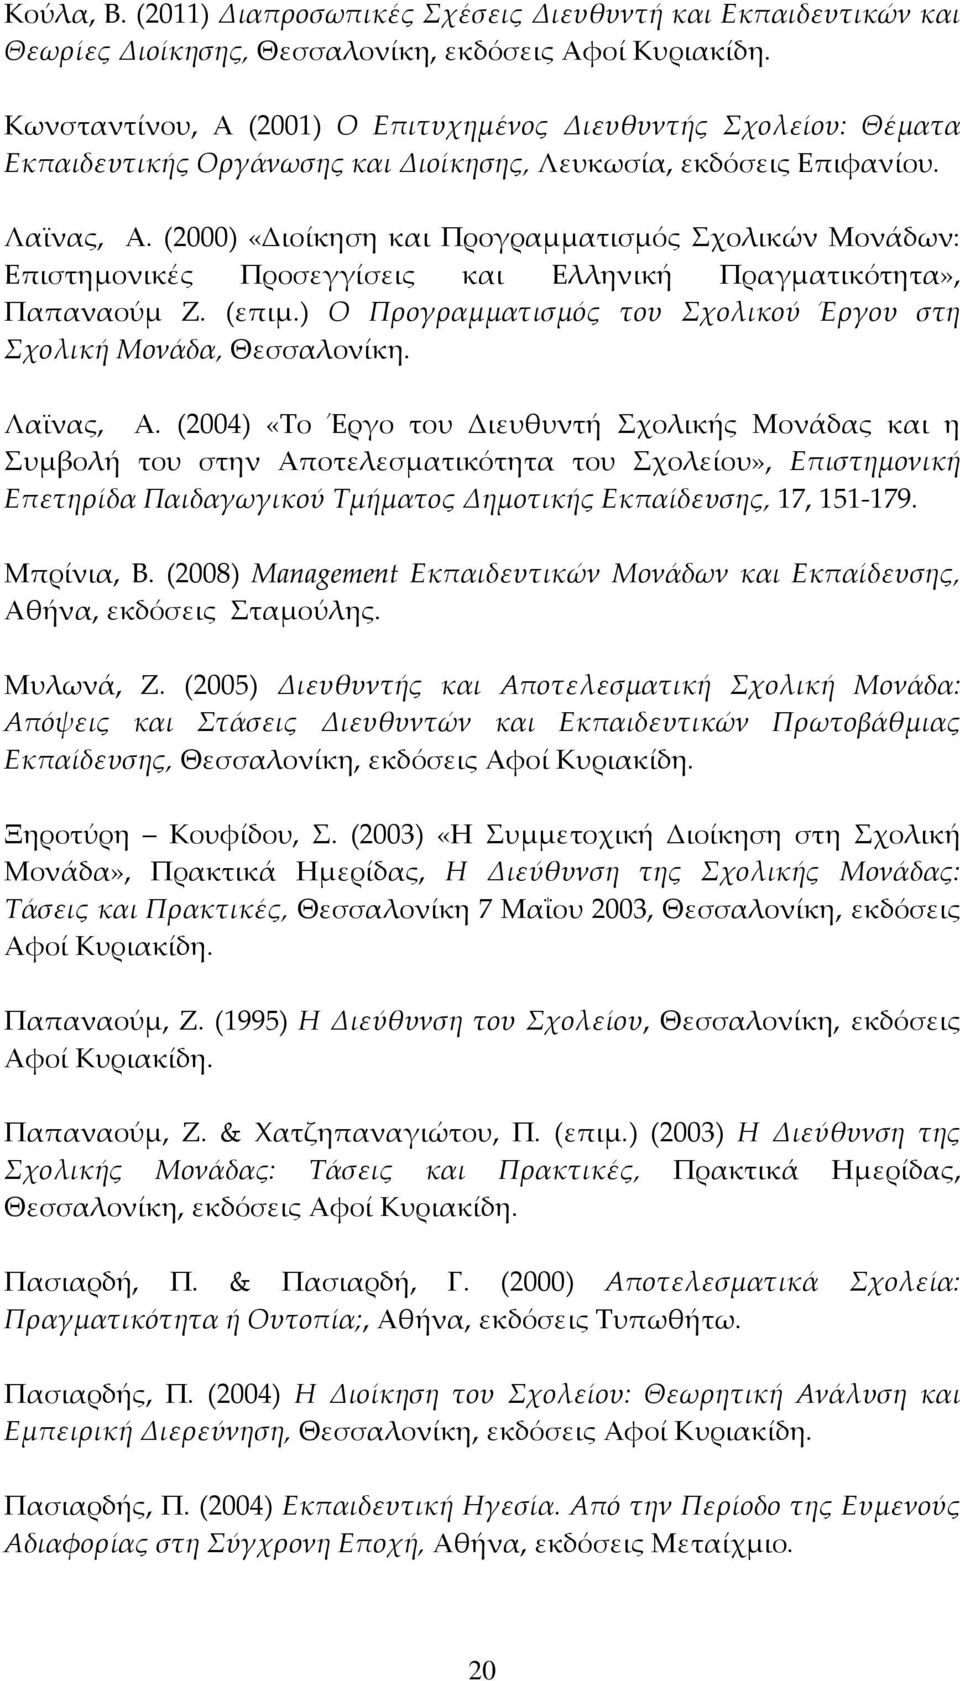 (2000) «Διοίκηση και Προγραμματισμός χολικών Μονάδων: Επιστημονικές Προσεγγίσεις και Ελληνική Πραγματικότητα», Παπαναούμ Ζ. (επιμ.) Ο Προγραμματισμός του χολικού Έργου στη χολική Μονάδα, Θεσσαλονίκη.